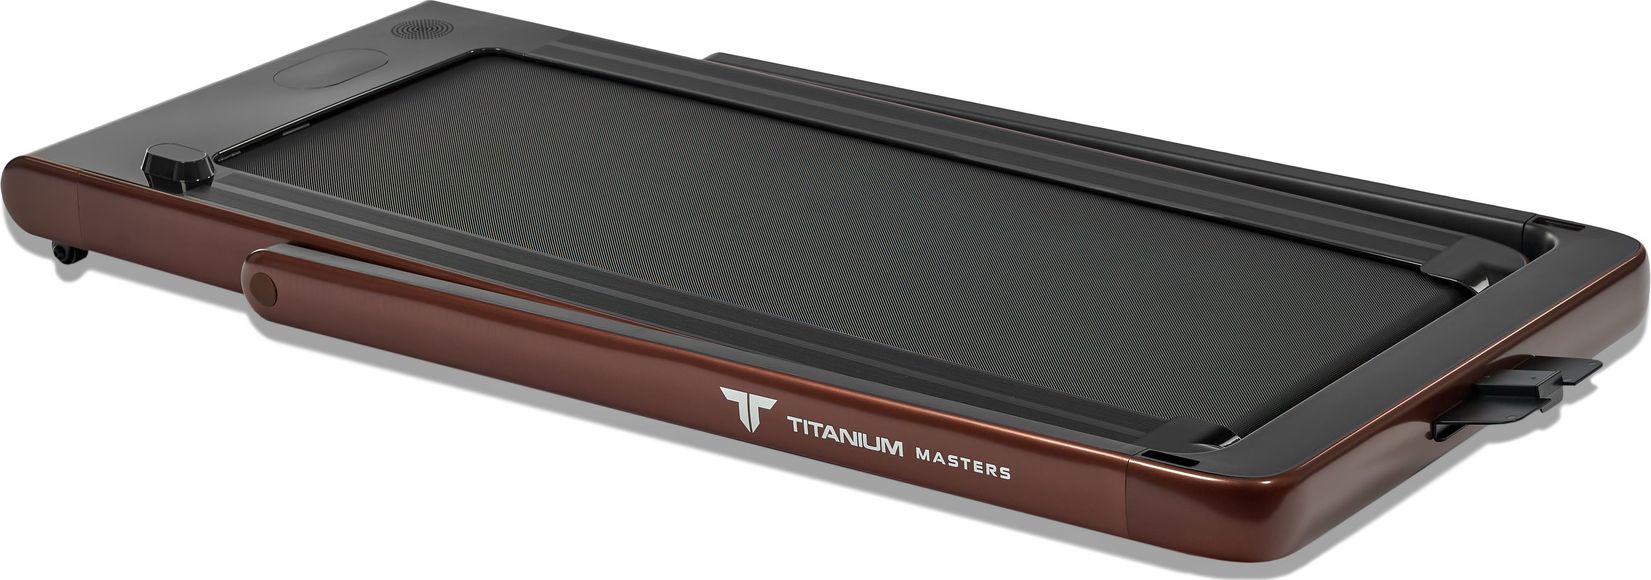 Беговая дорожка Titanium Masters Slimtech C10, коричневая